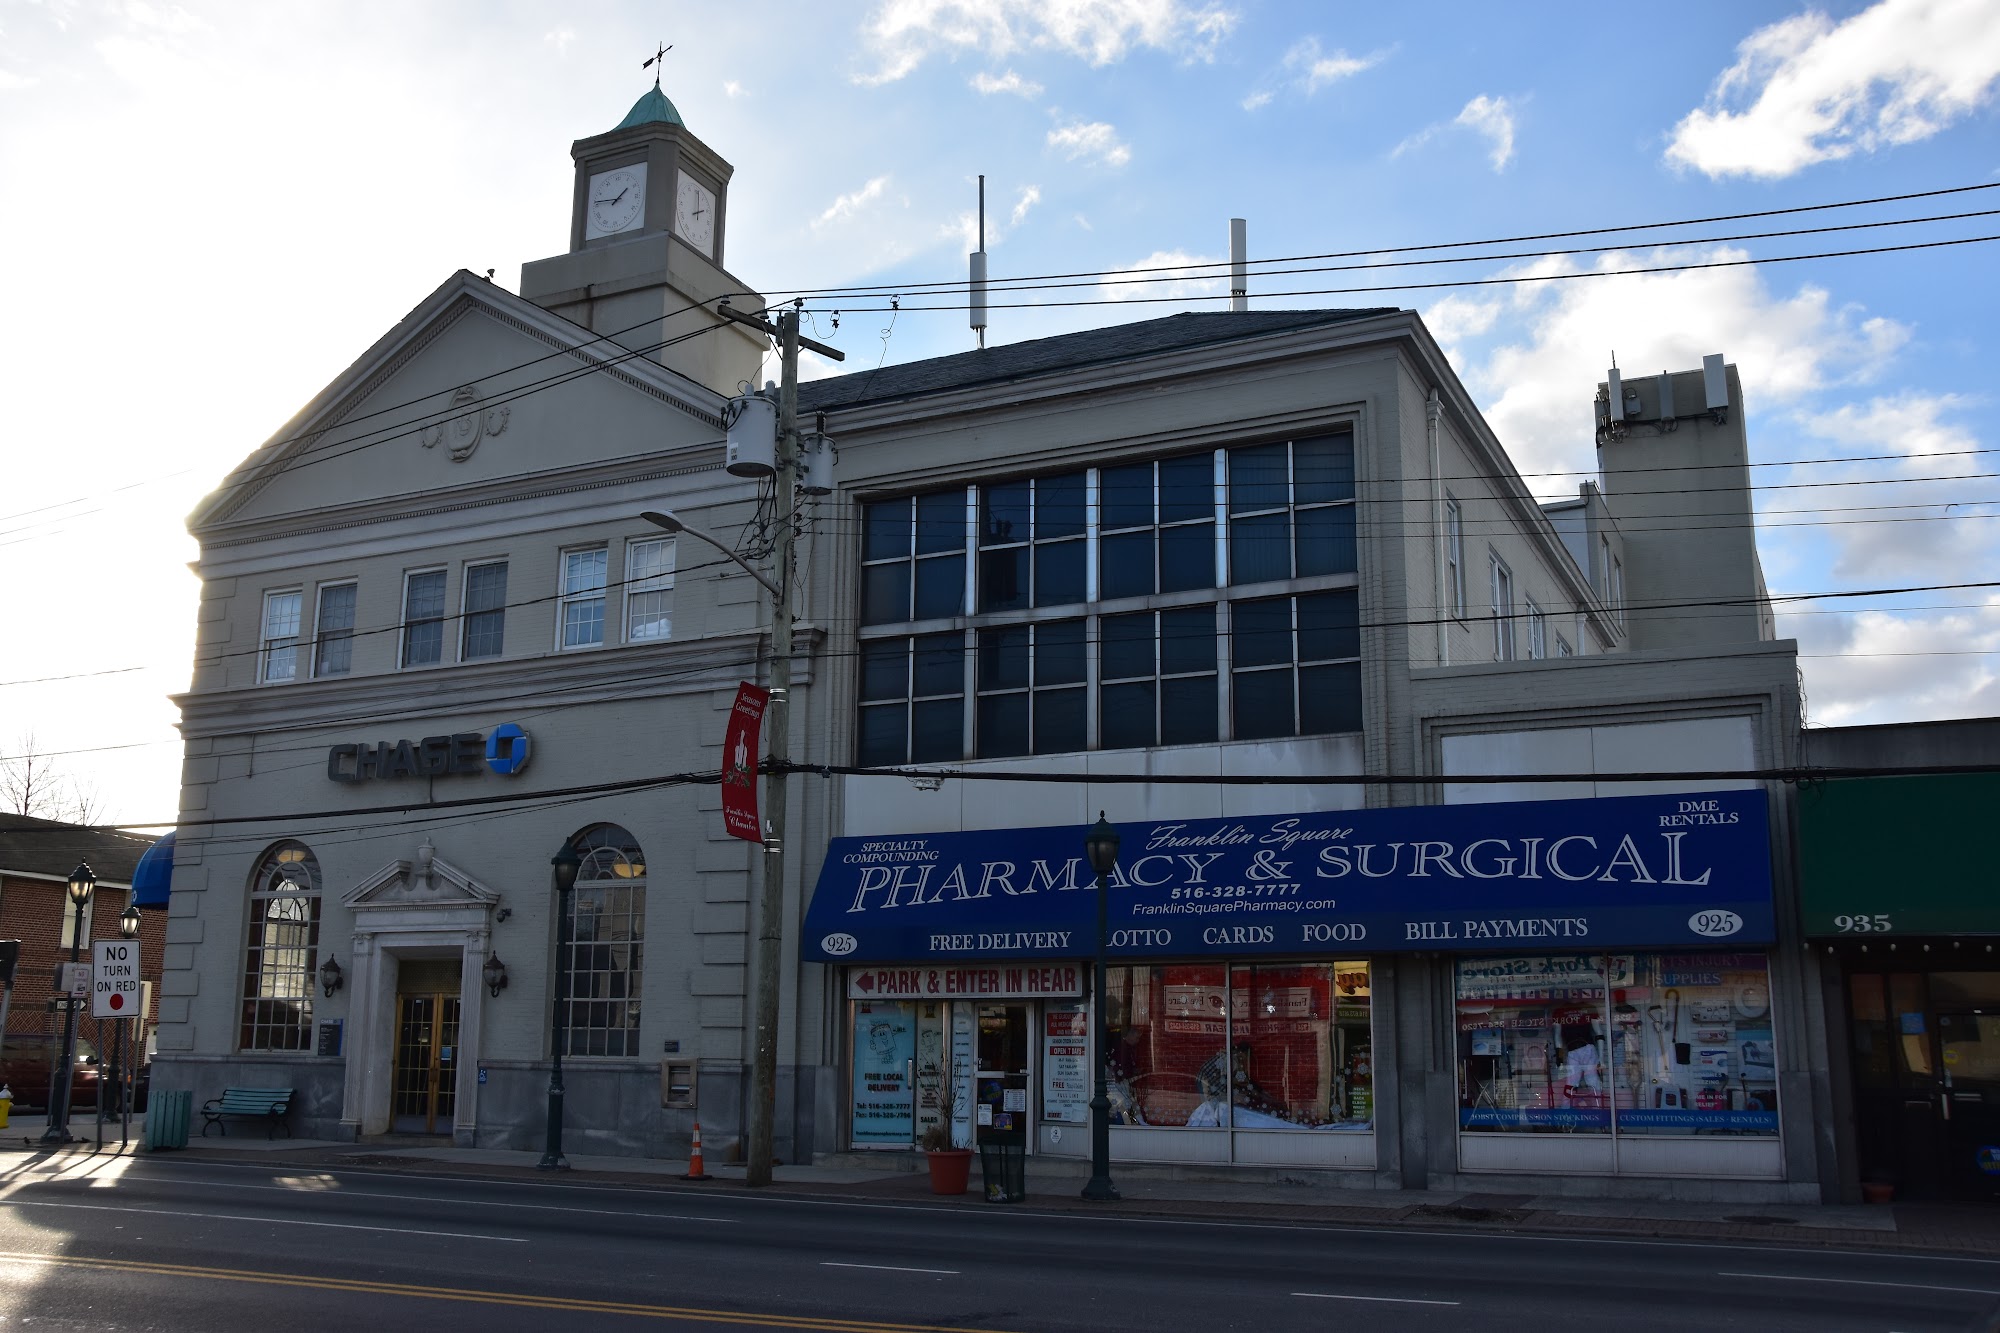 Franklin Square Pharmacy